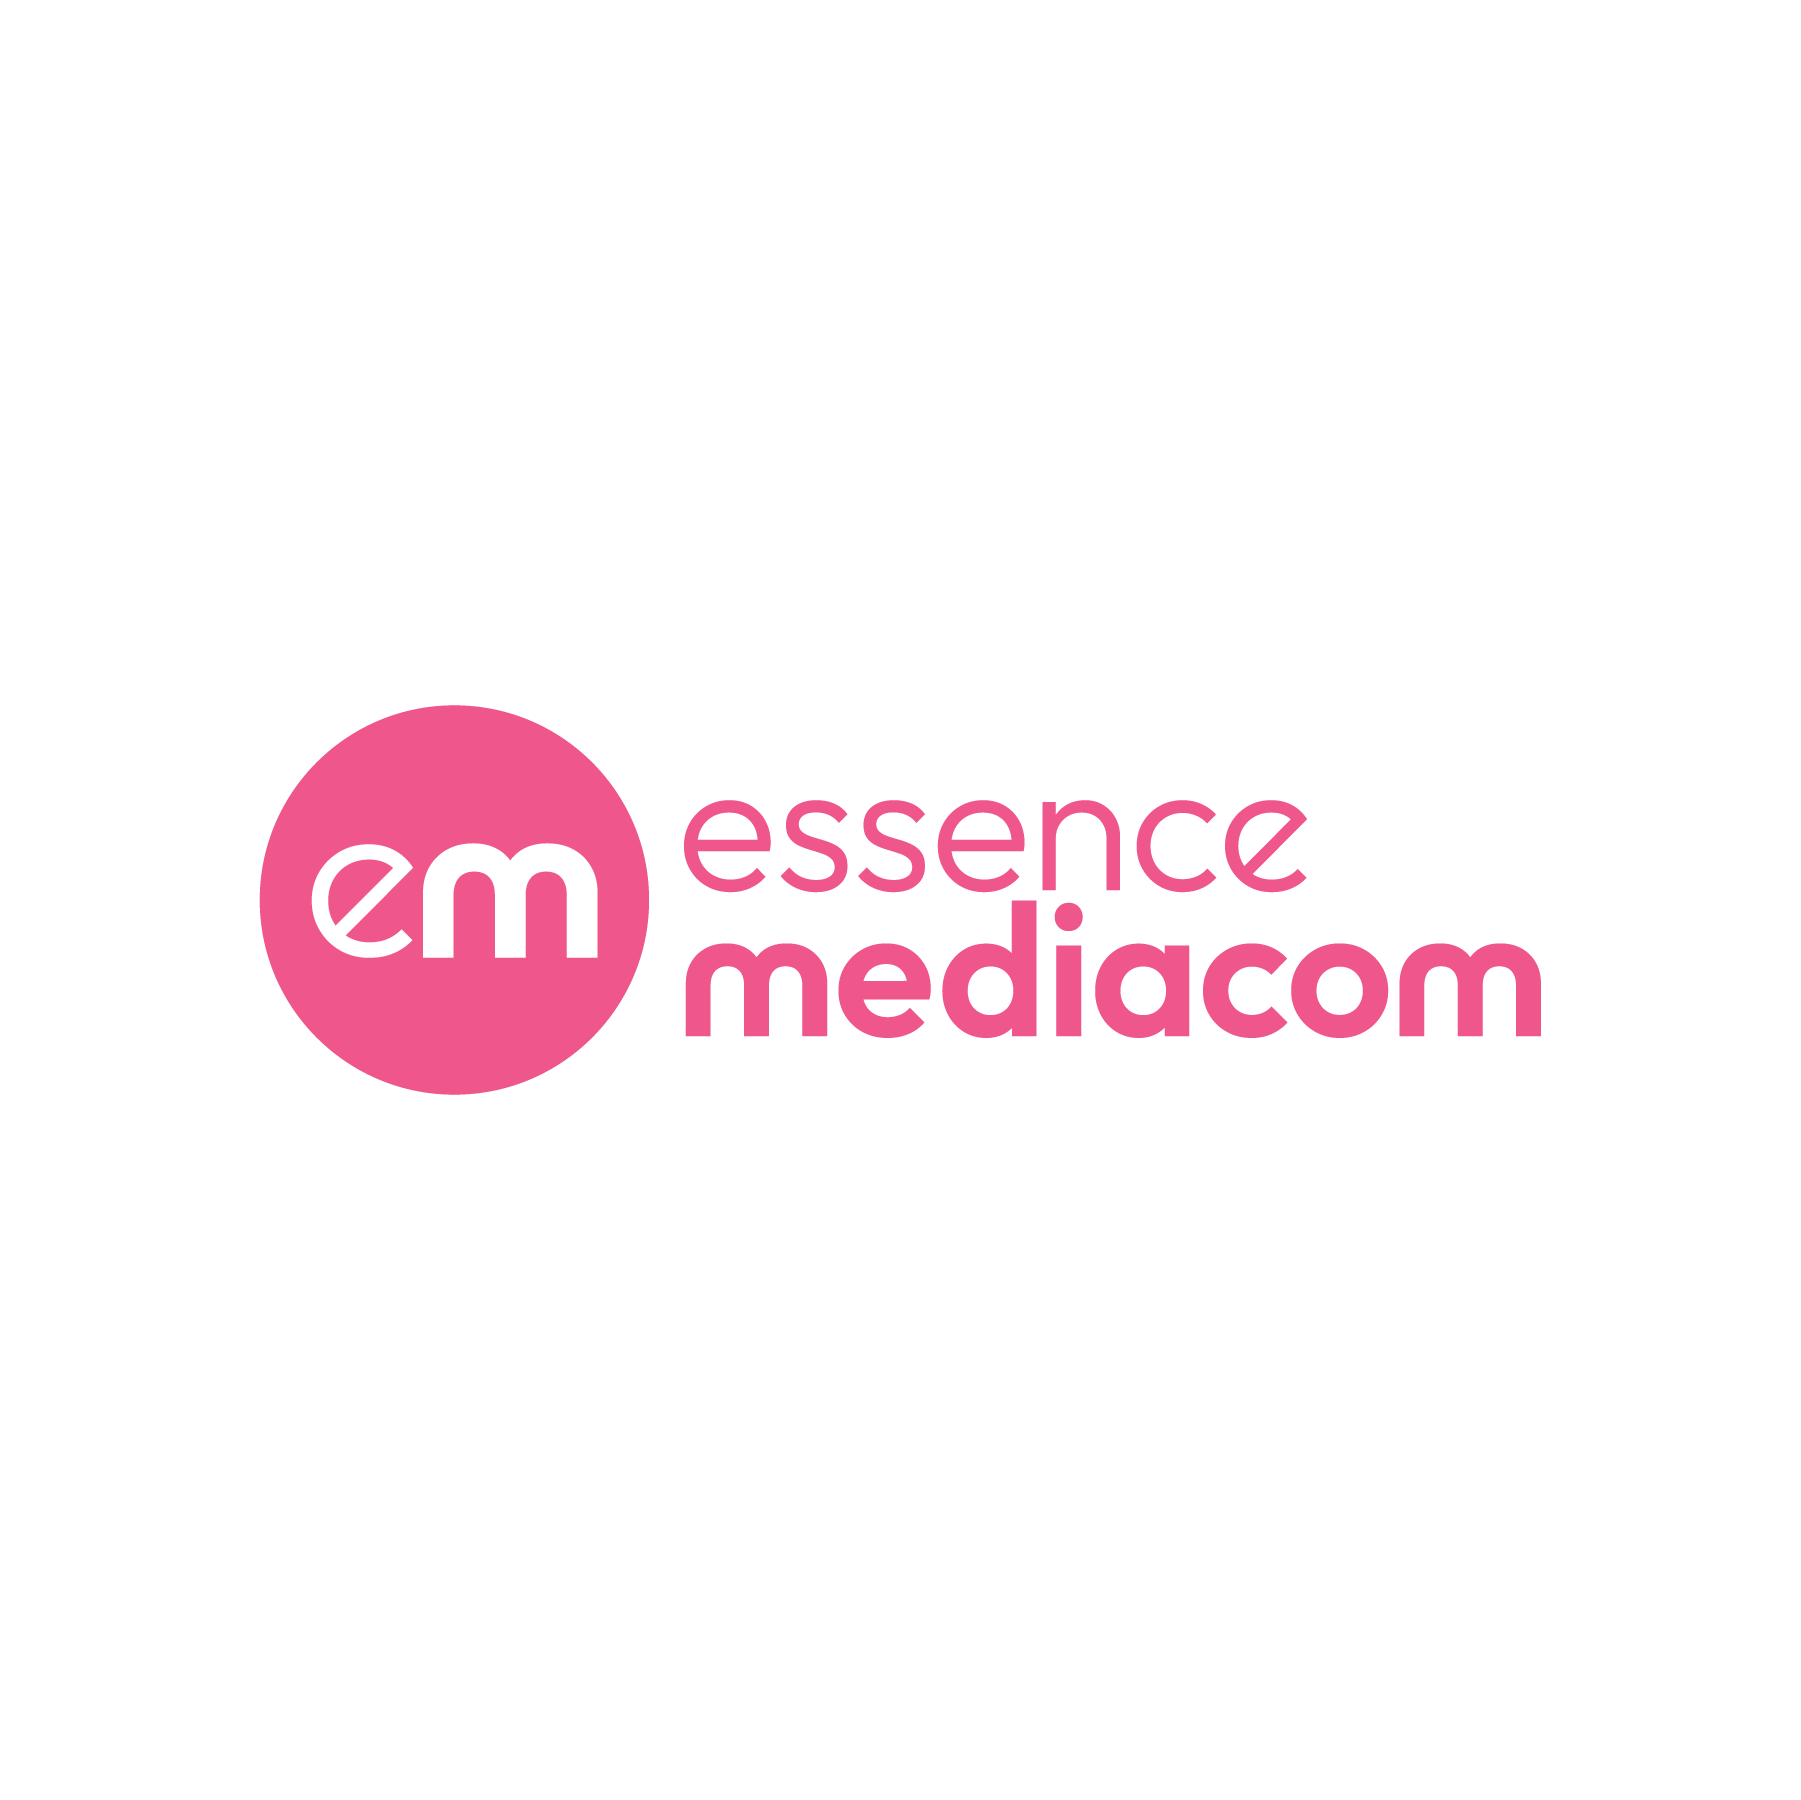 essence mediacom